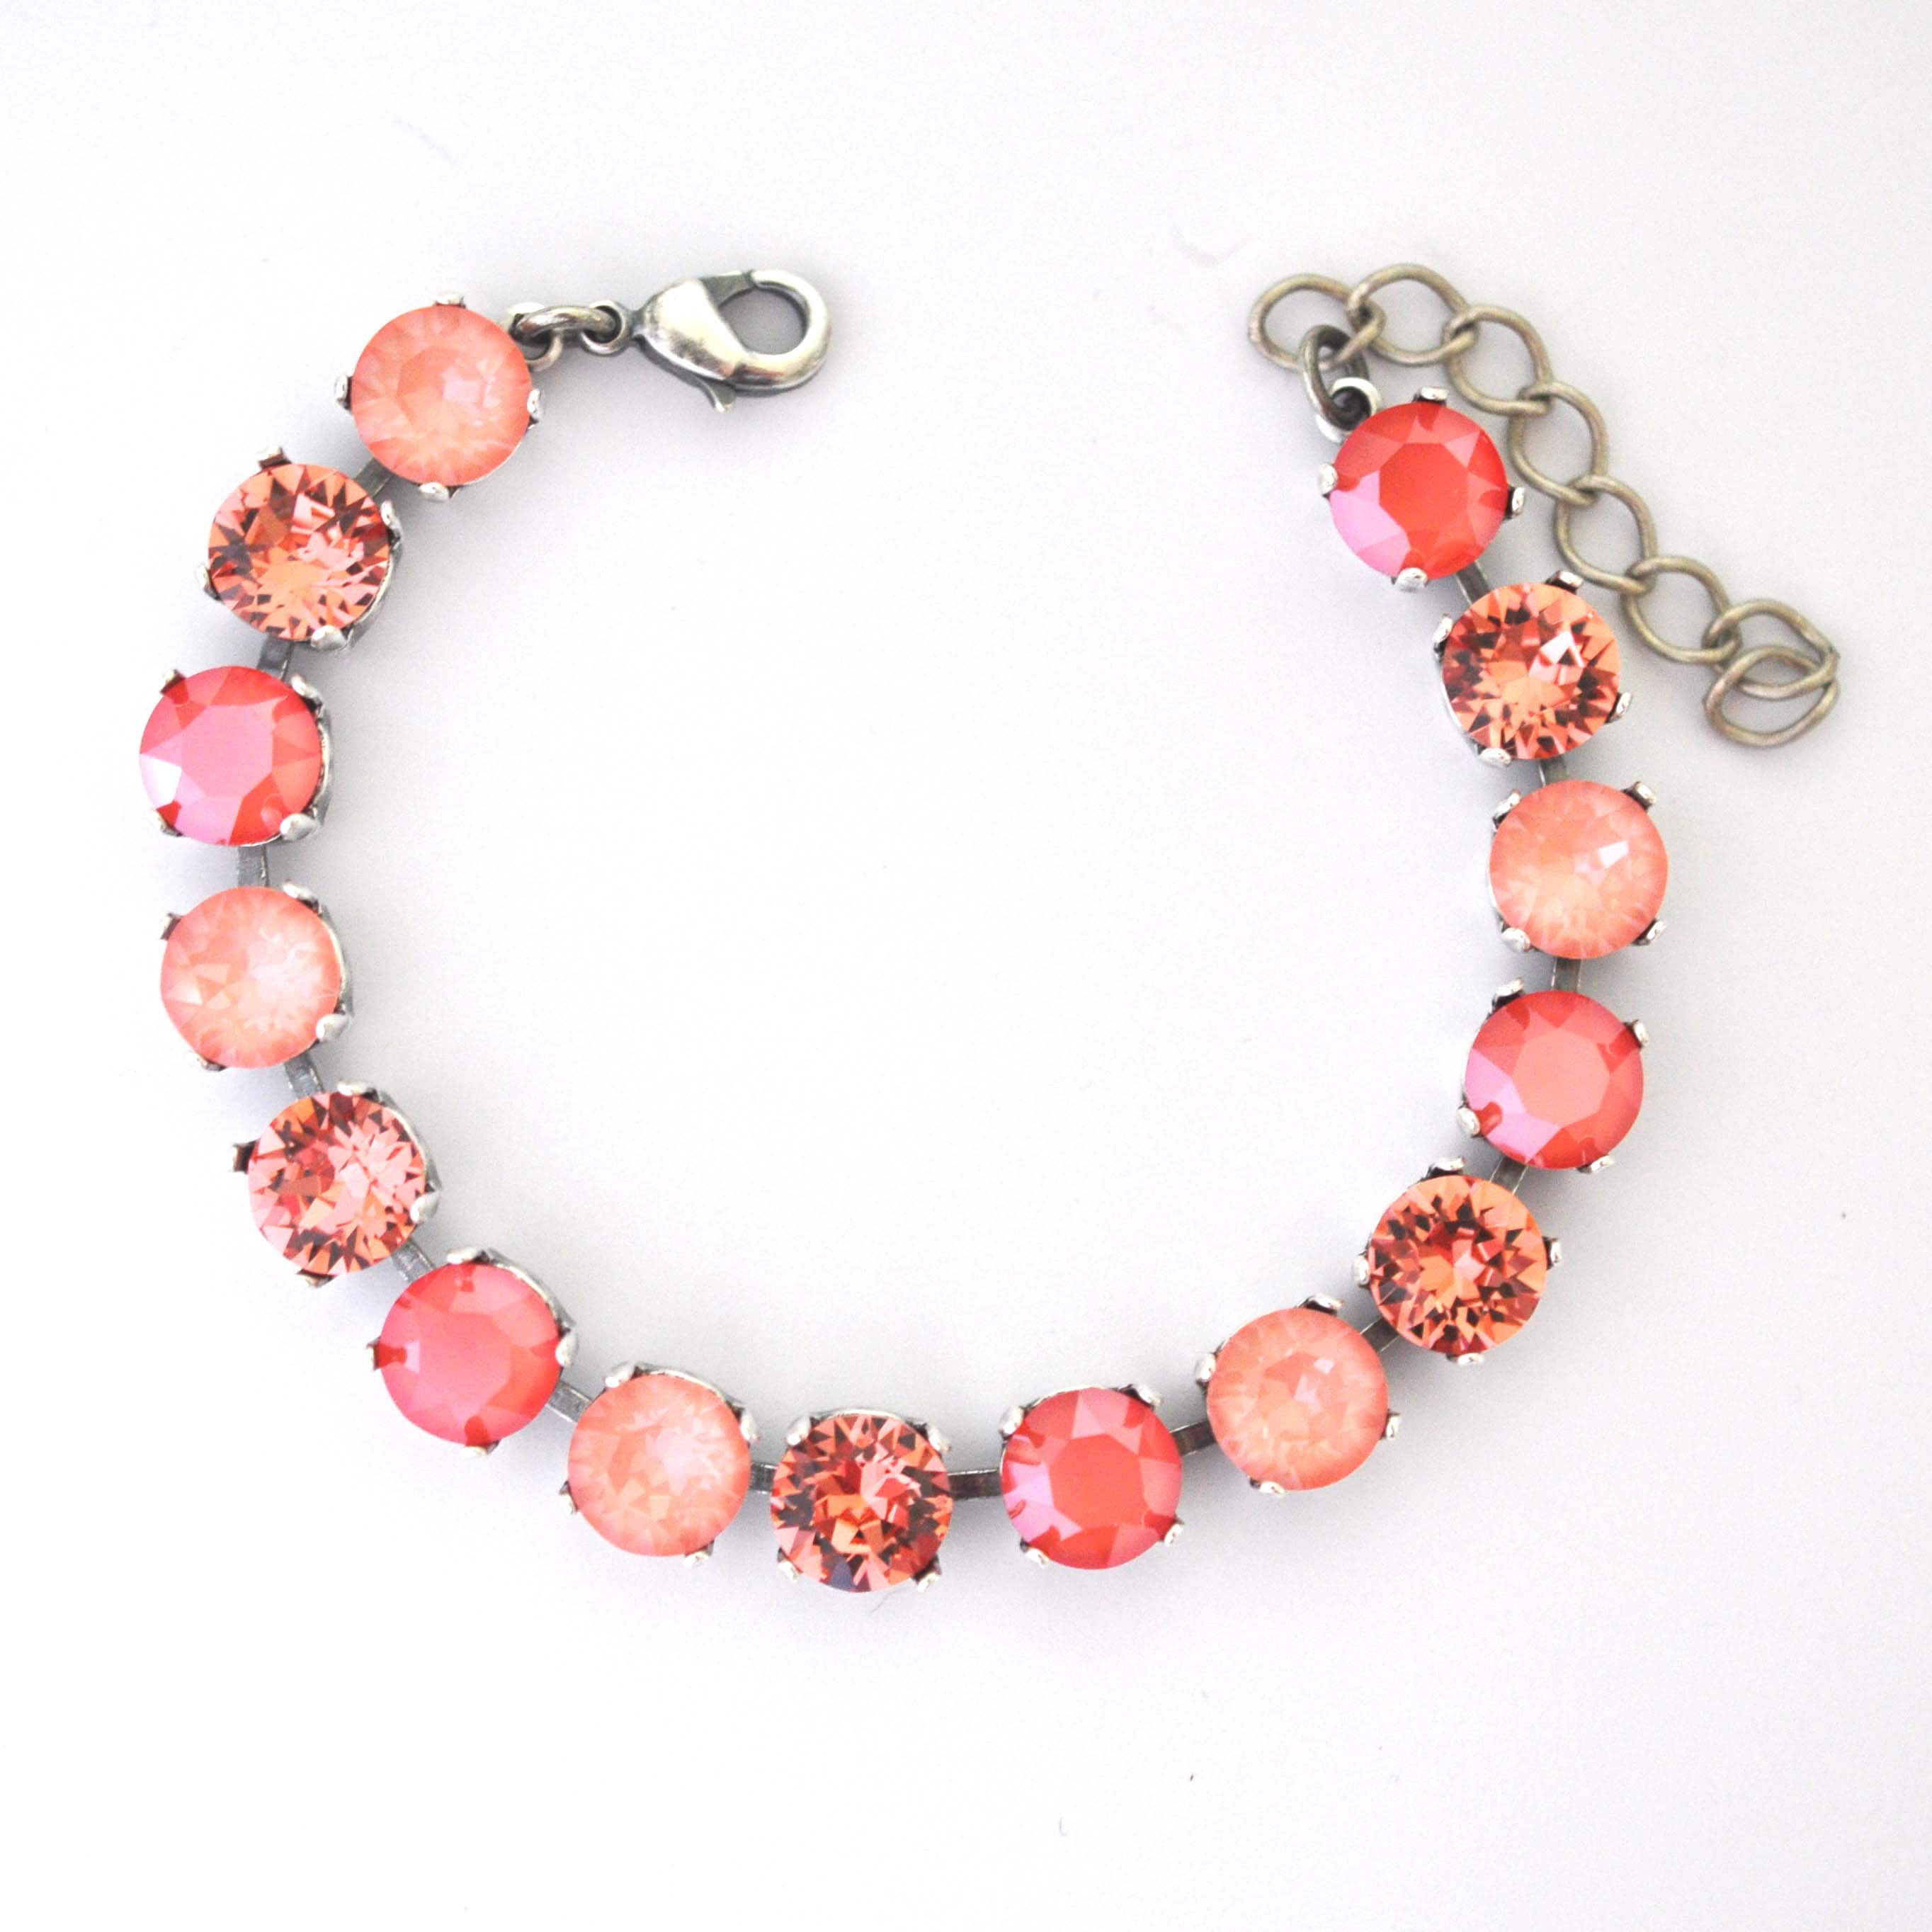 Coral Crush Sparkle Bracelet Kit